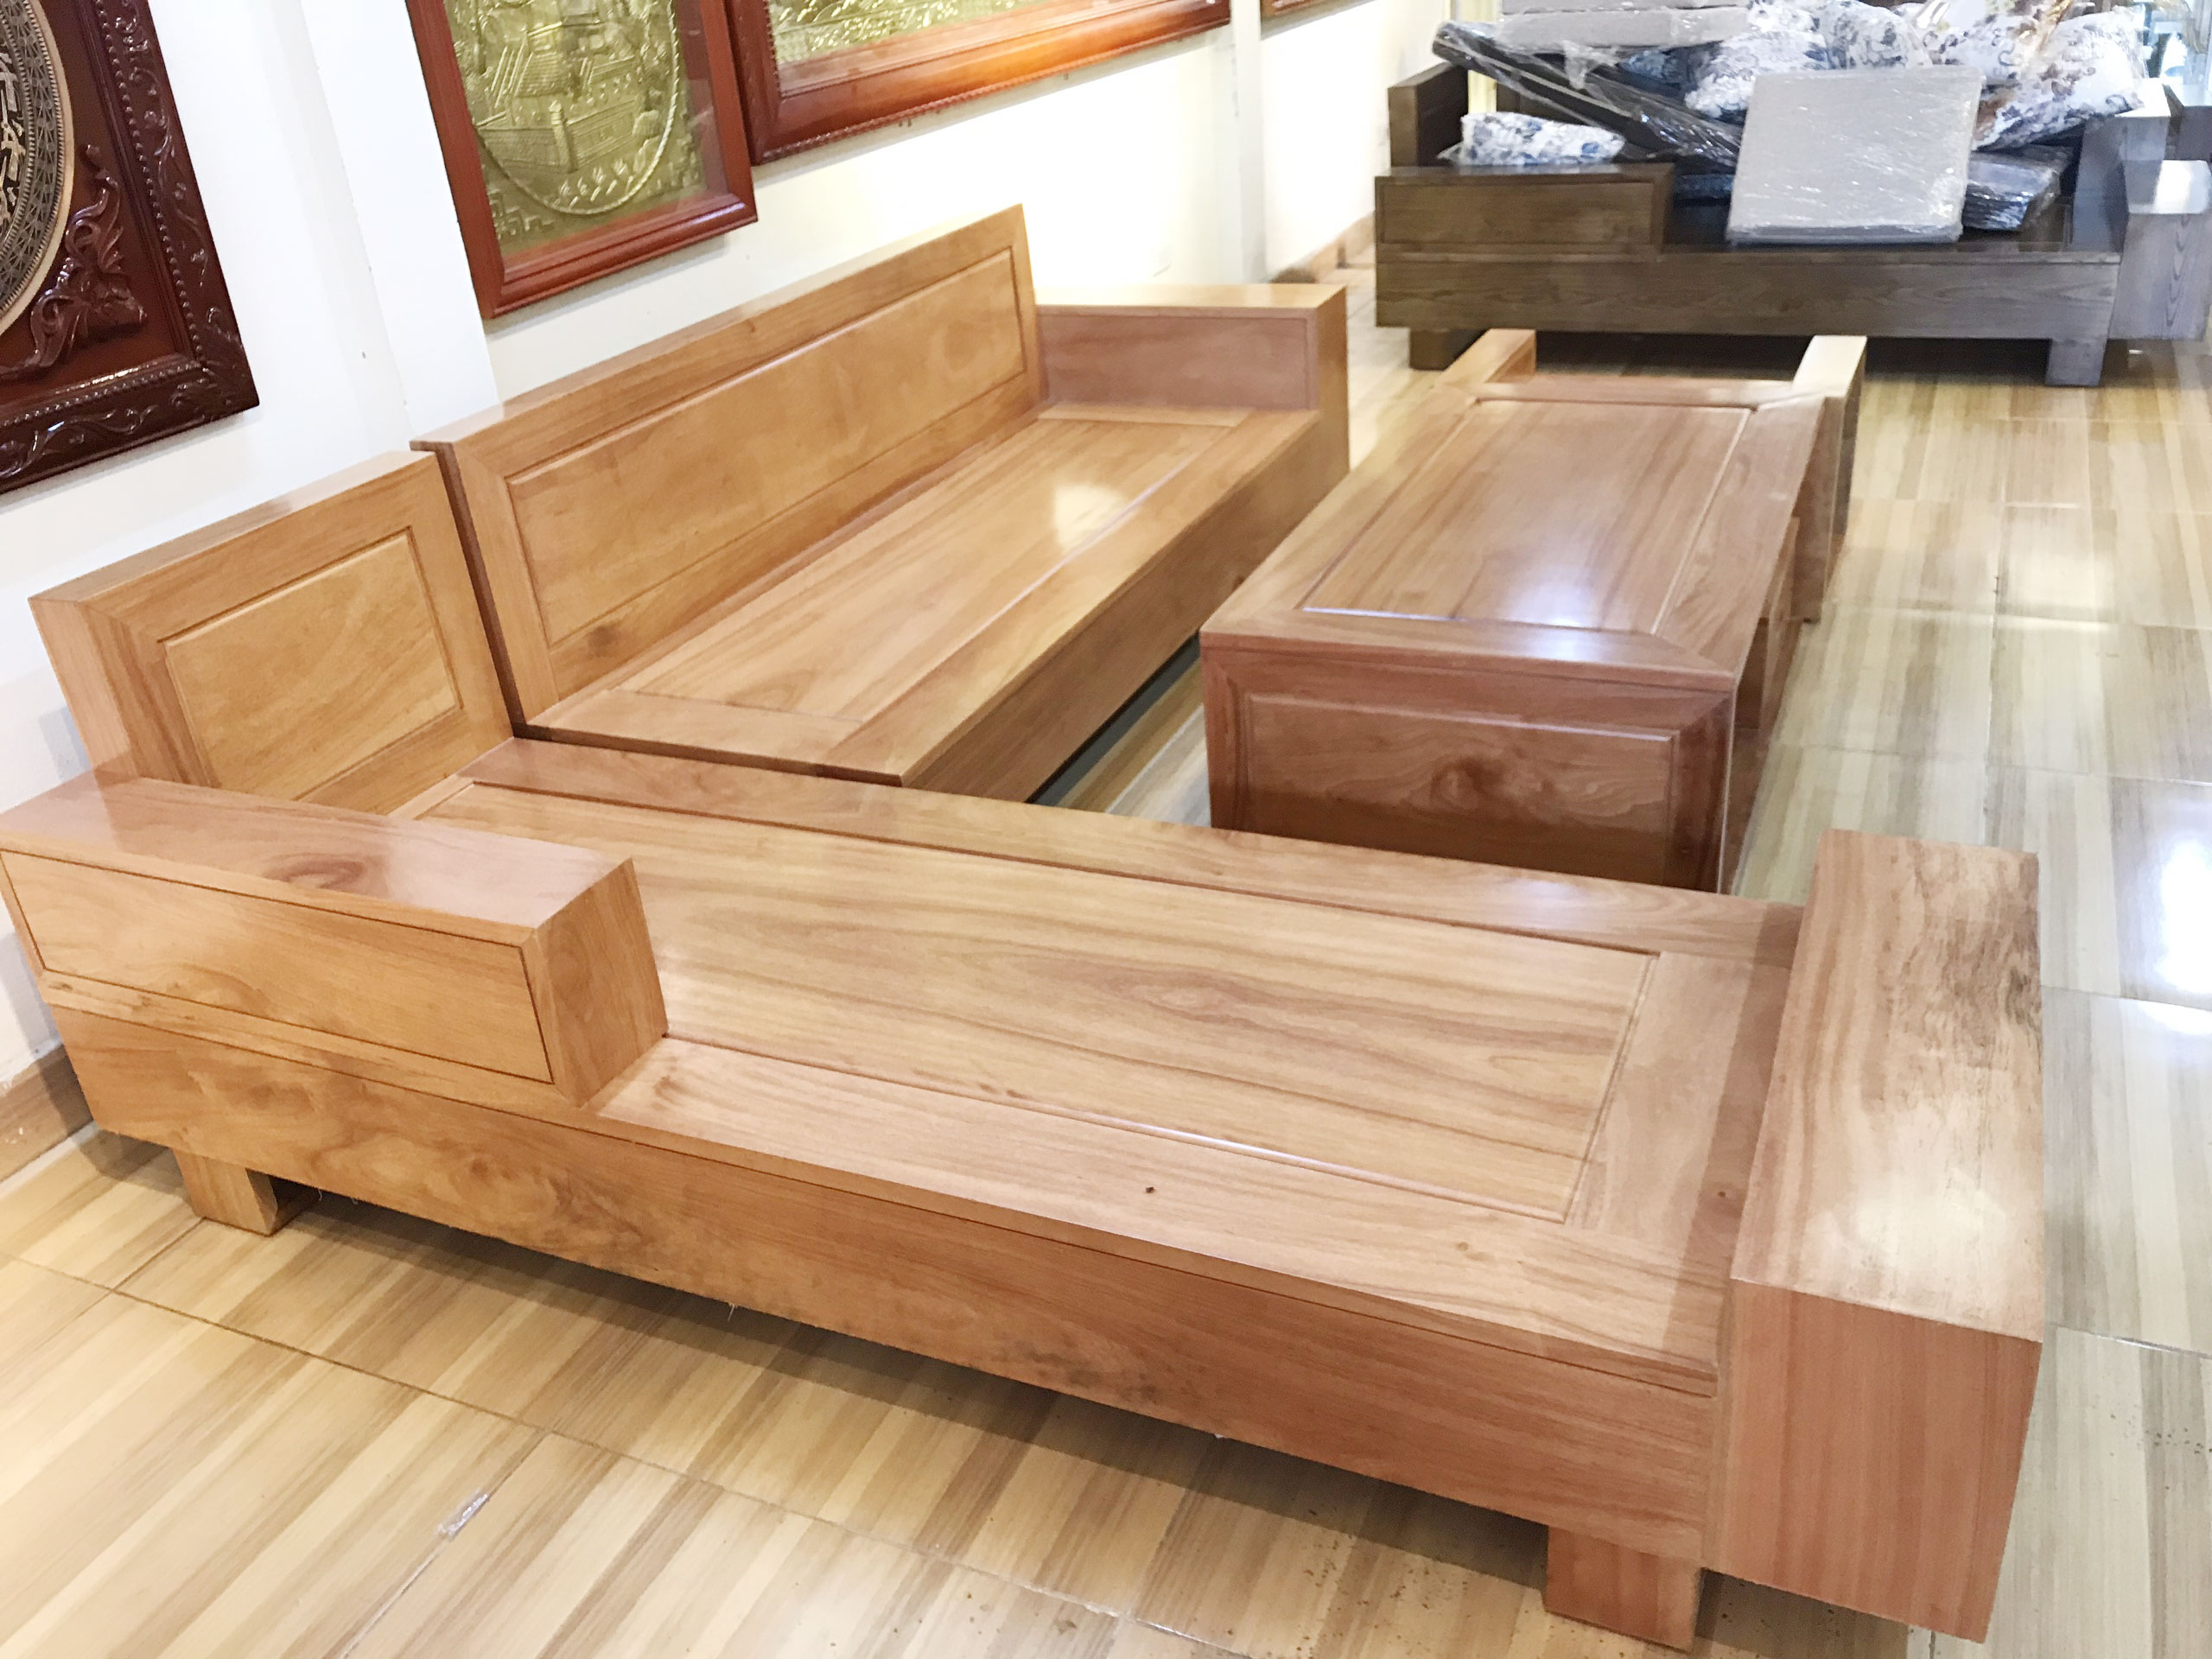 Một bộ bàn ghế phòng khách gỗ đinh hương sẽ là lựa chọn hoàn hảo để tạo ra không gian sống sang trọng và hiện đại cho căn nhà của bạn. Với chất lượng gỗ đinh hương cao cấp và thiết kế tinh tế, bộ bàn ghế này không chỉ mang lại sự thoải mái mà còn trở thành điểm nhấn sang trọng của căn phòng.